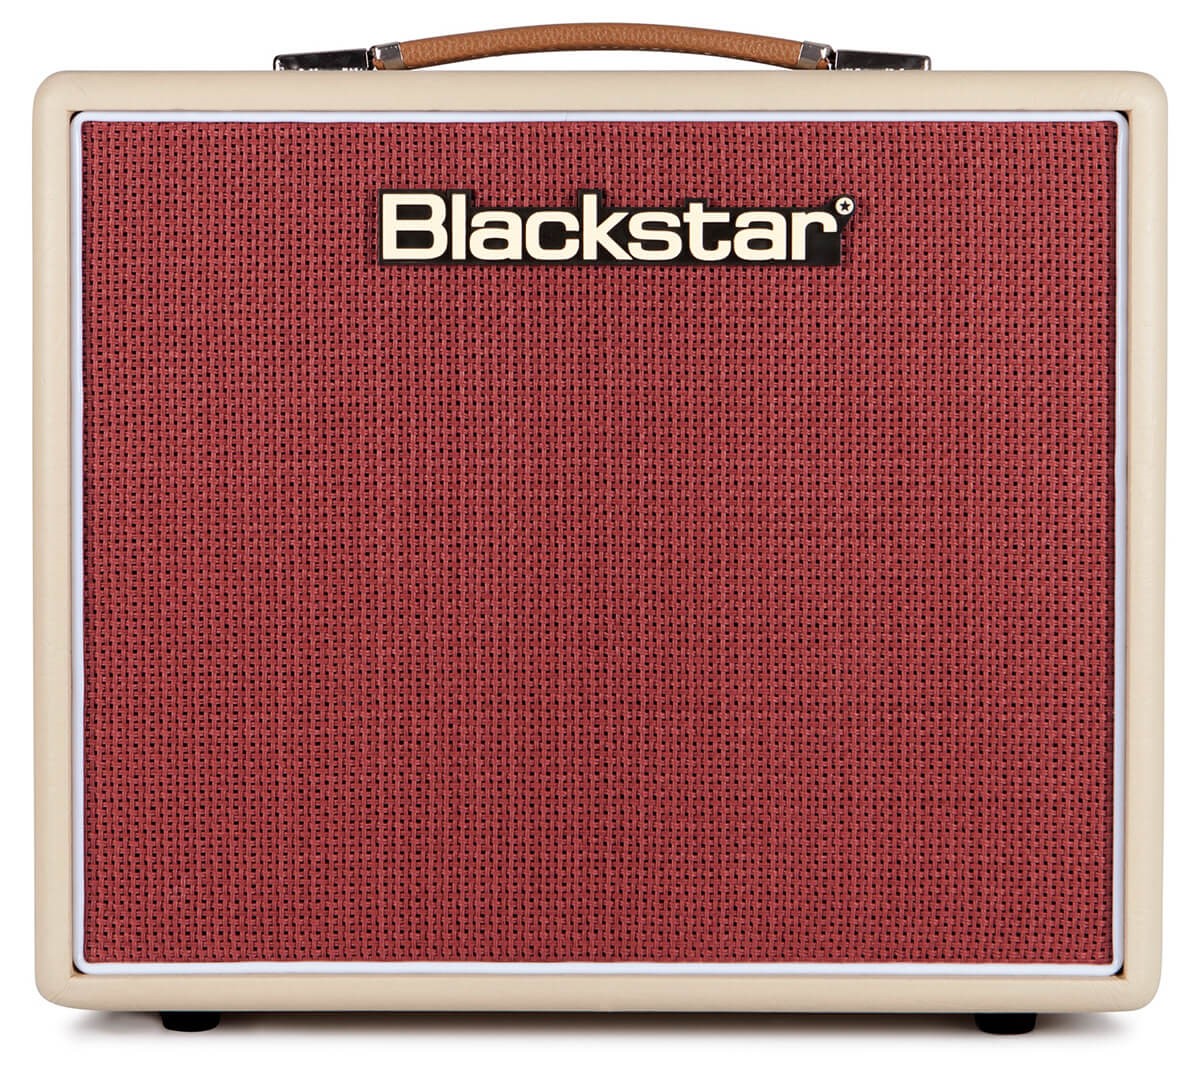 Køb Blackstar Studio 10 6L6 Guitarforstærker - Pris 4995.00 kr.